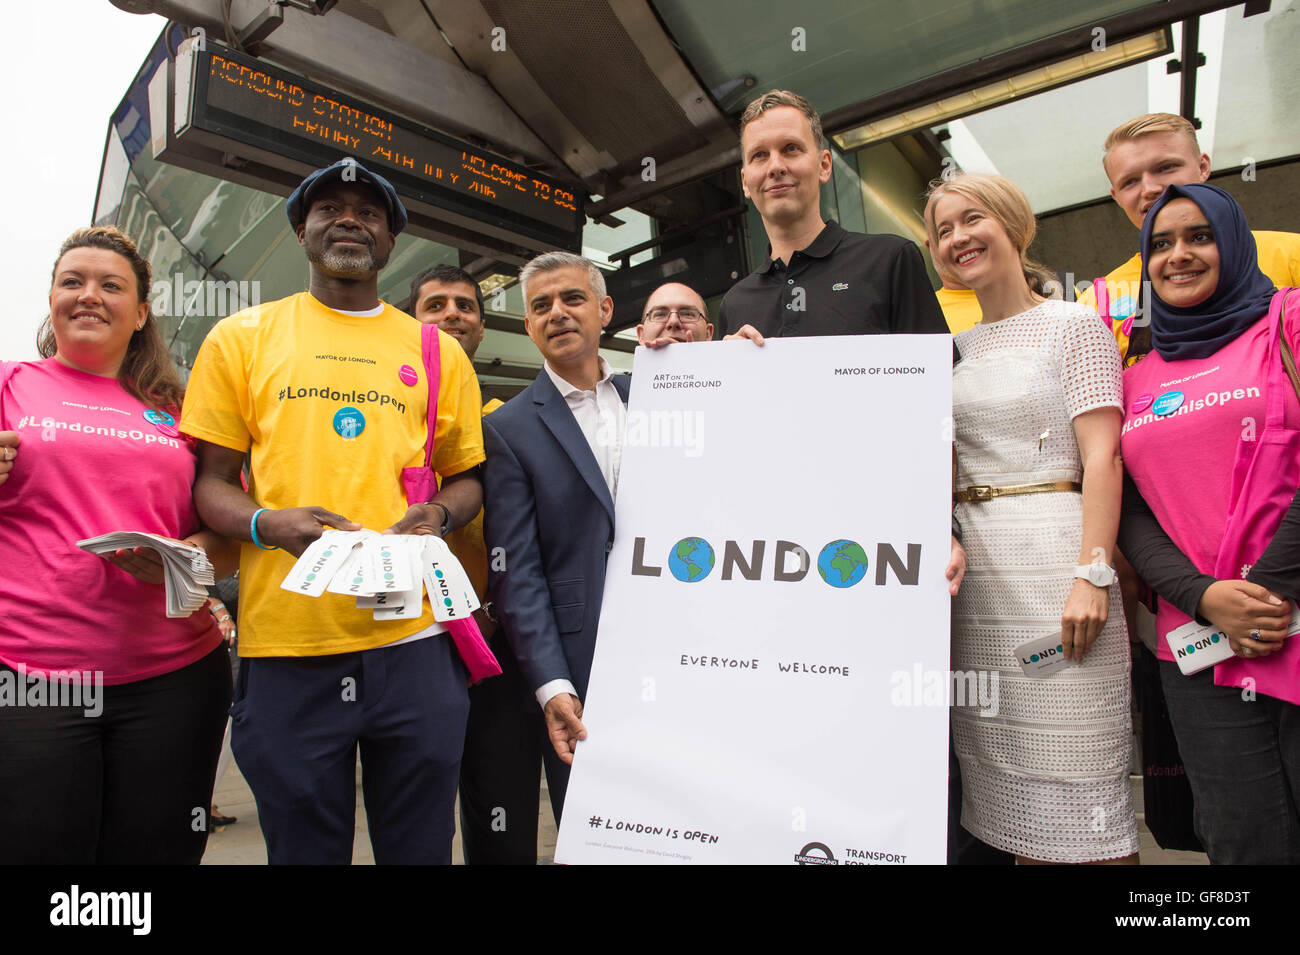 El Alcalde de Londres, Sadiq Khan desvela un nuevo cartel por el artista David Shrigley (derecha) en la estación de metro Southwark que es parte de una campaña para decirle a los visitantes que Londres está abierto a los negocios como de costumbre después del mes pasado EU Referendum. Foto de stock